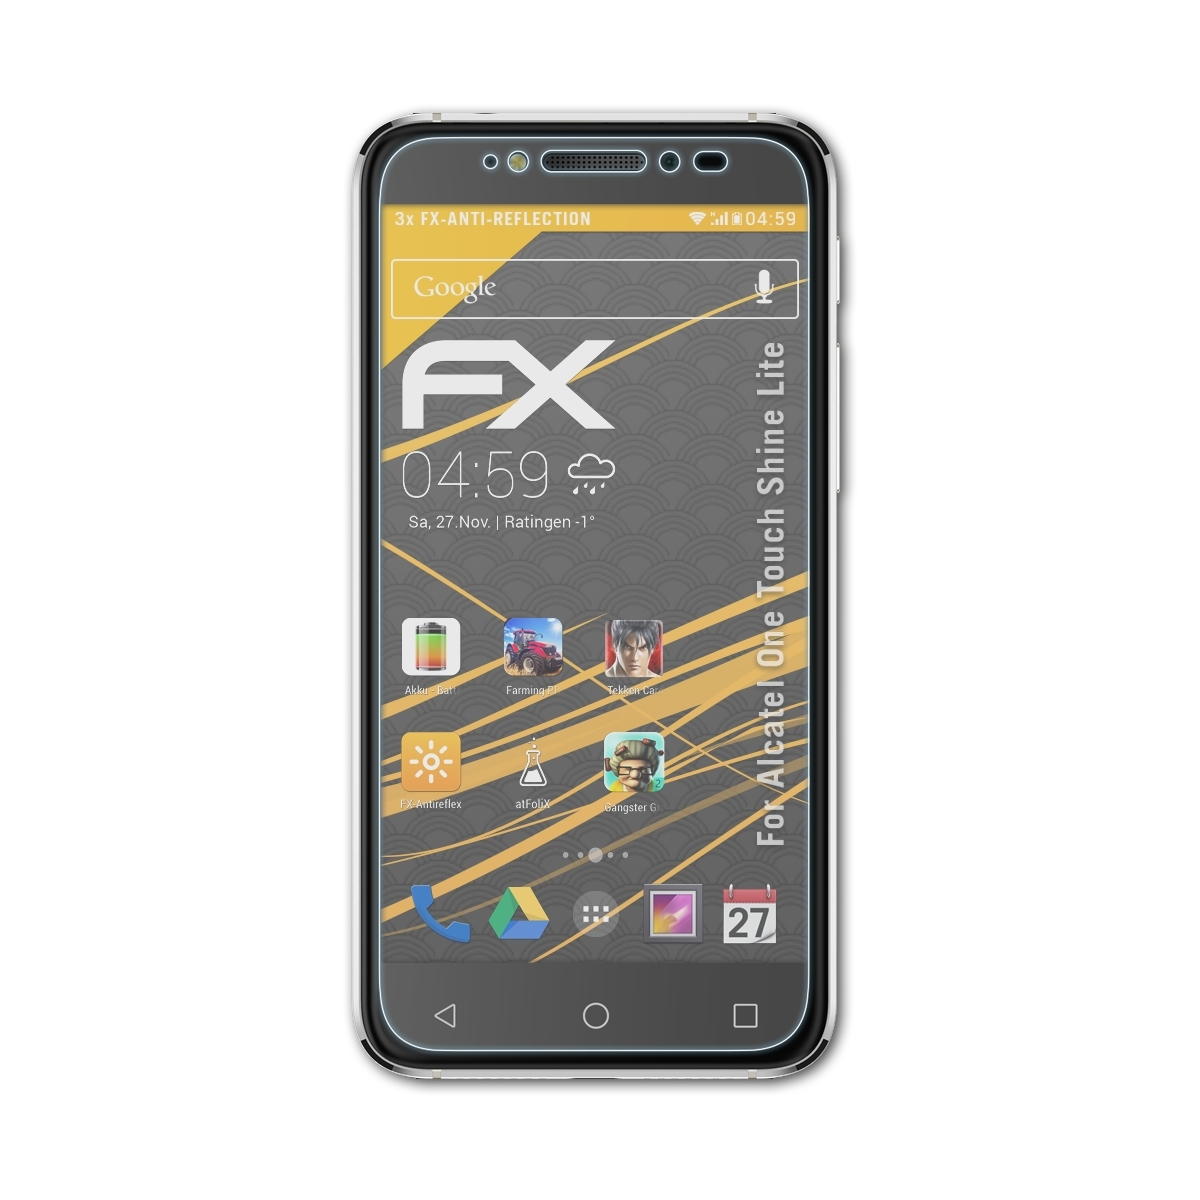 ATFOLIX 3x FX-Antireflex Alcatel Shine One Displayschutz(für Lite) Touch